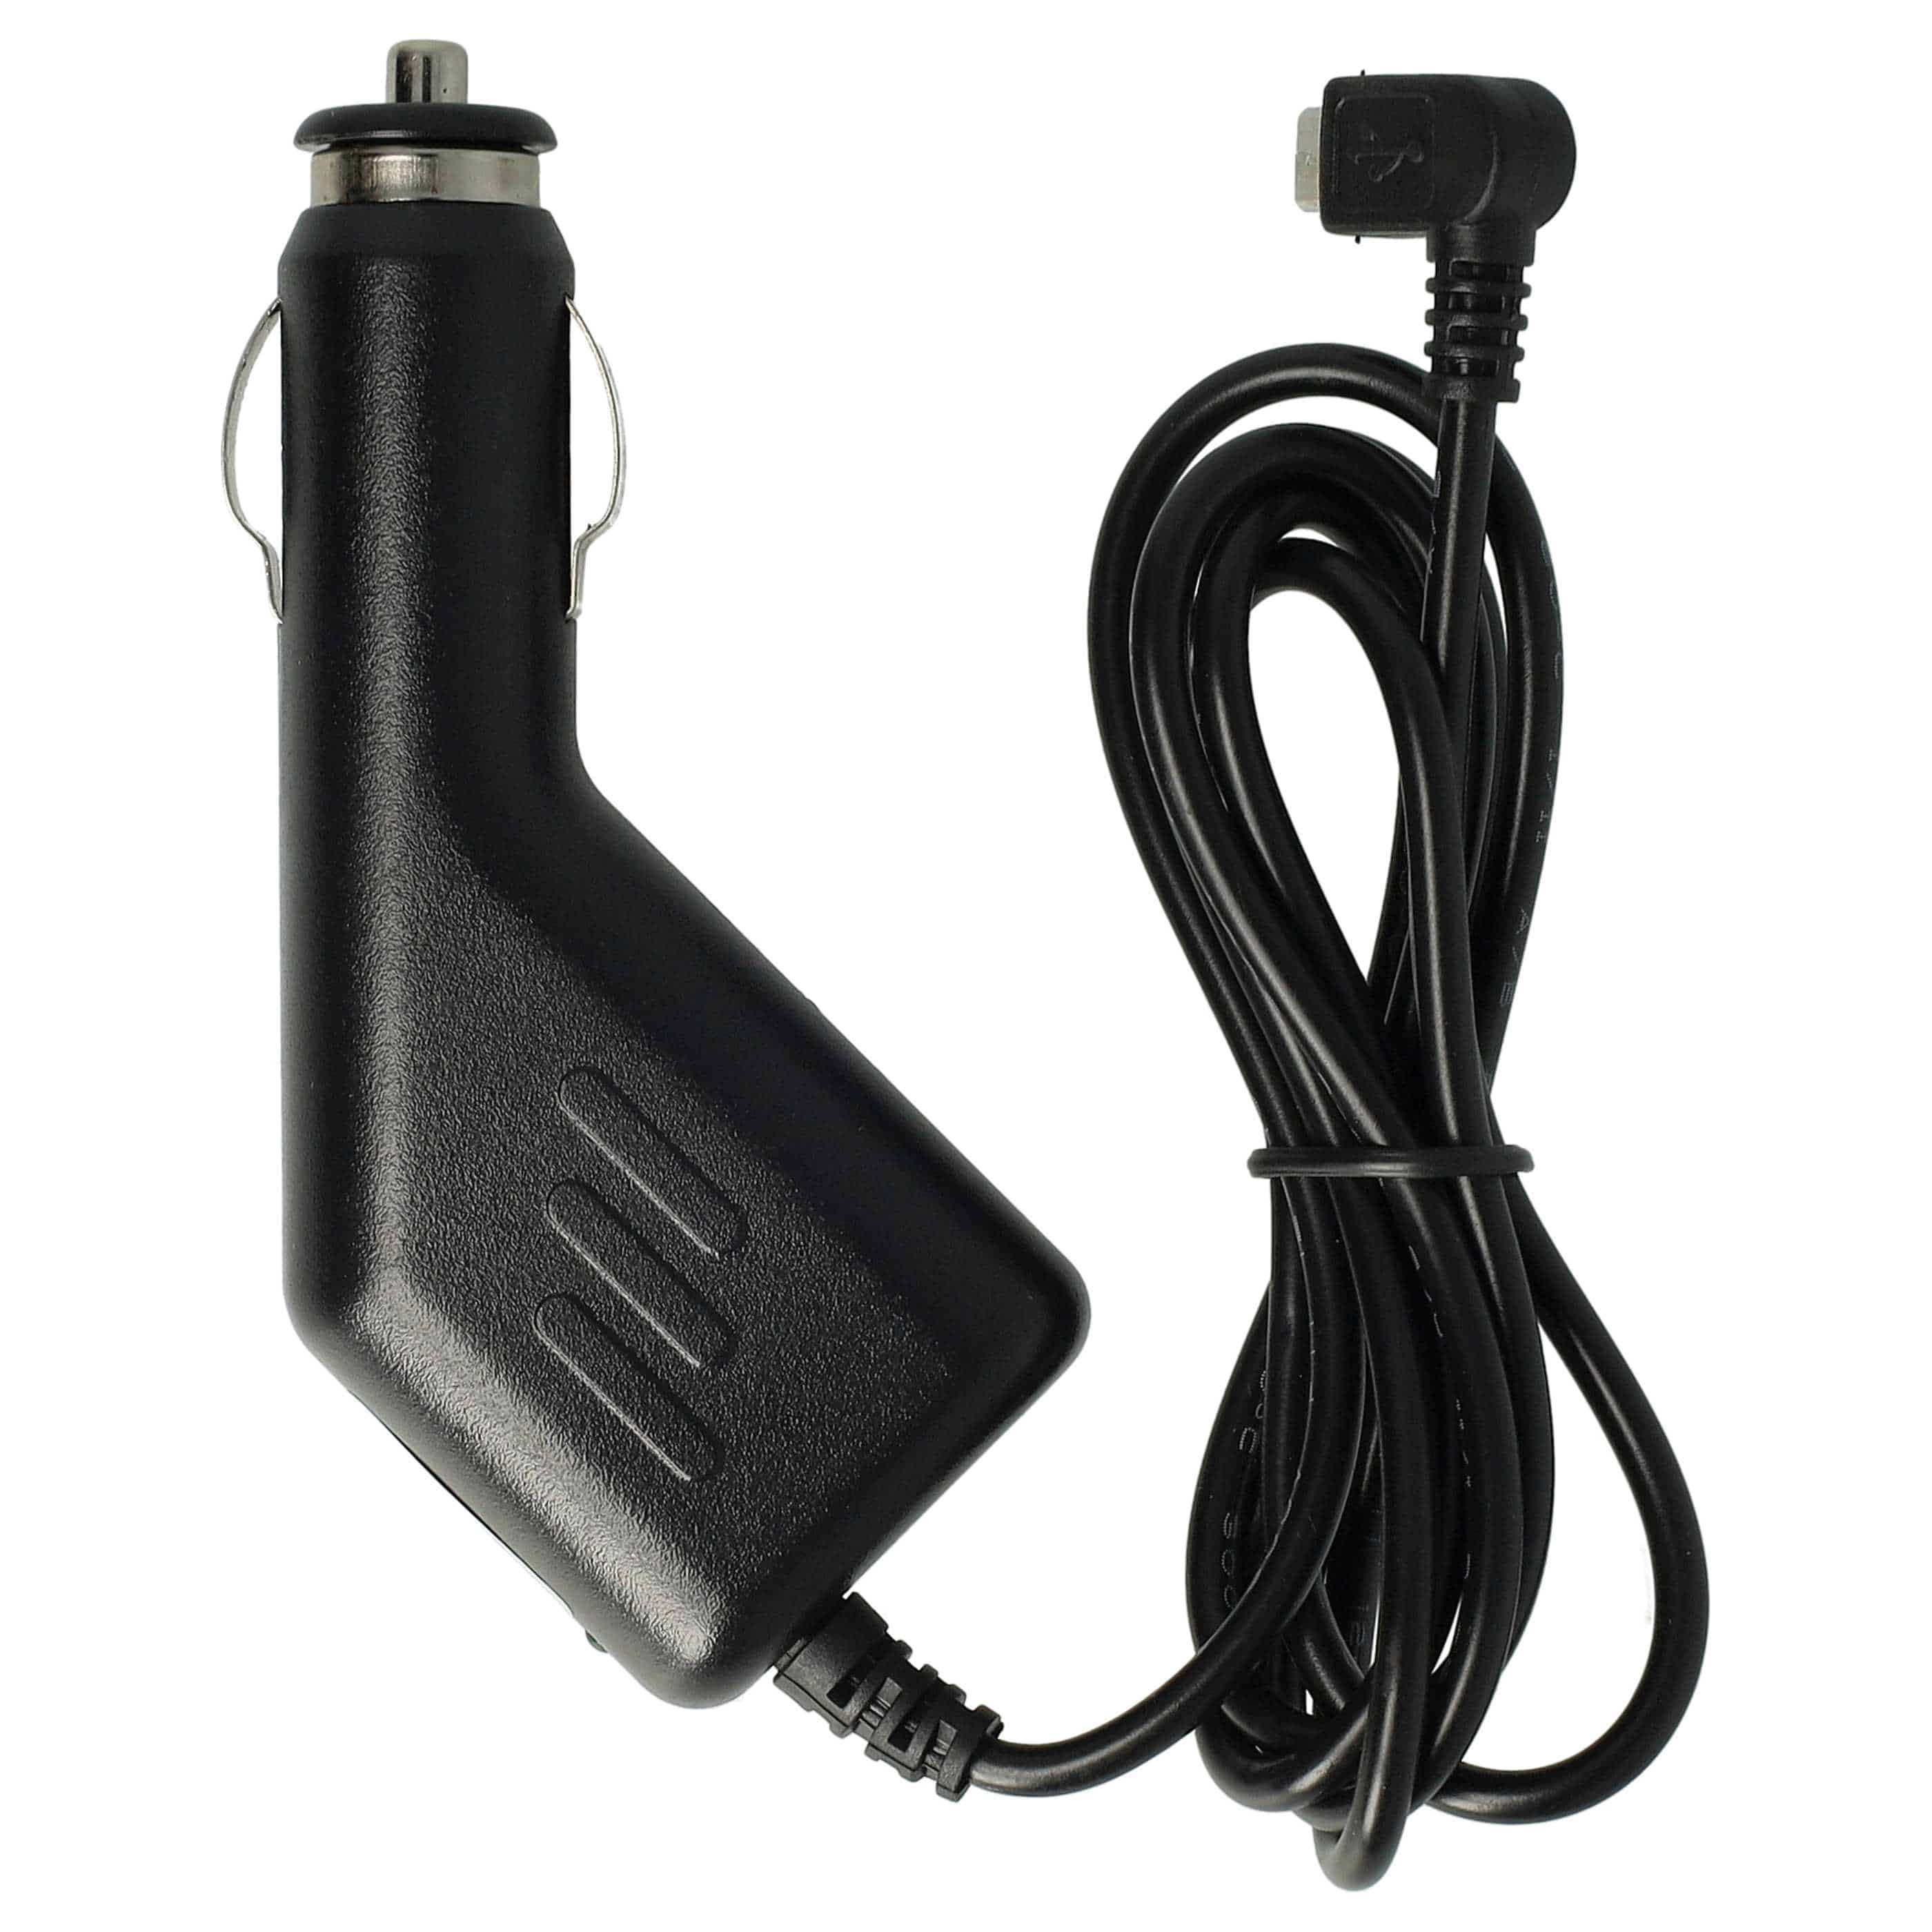 Ładowarka samochodowa Micro USB do urządzeń np. smartfona, nawigacji GPS Chic Olympia - 1,0 A, wtyk 90°